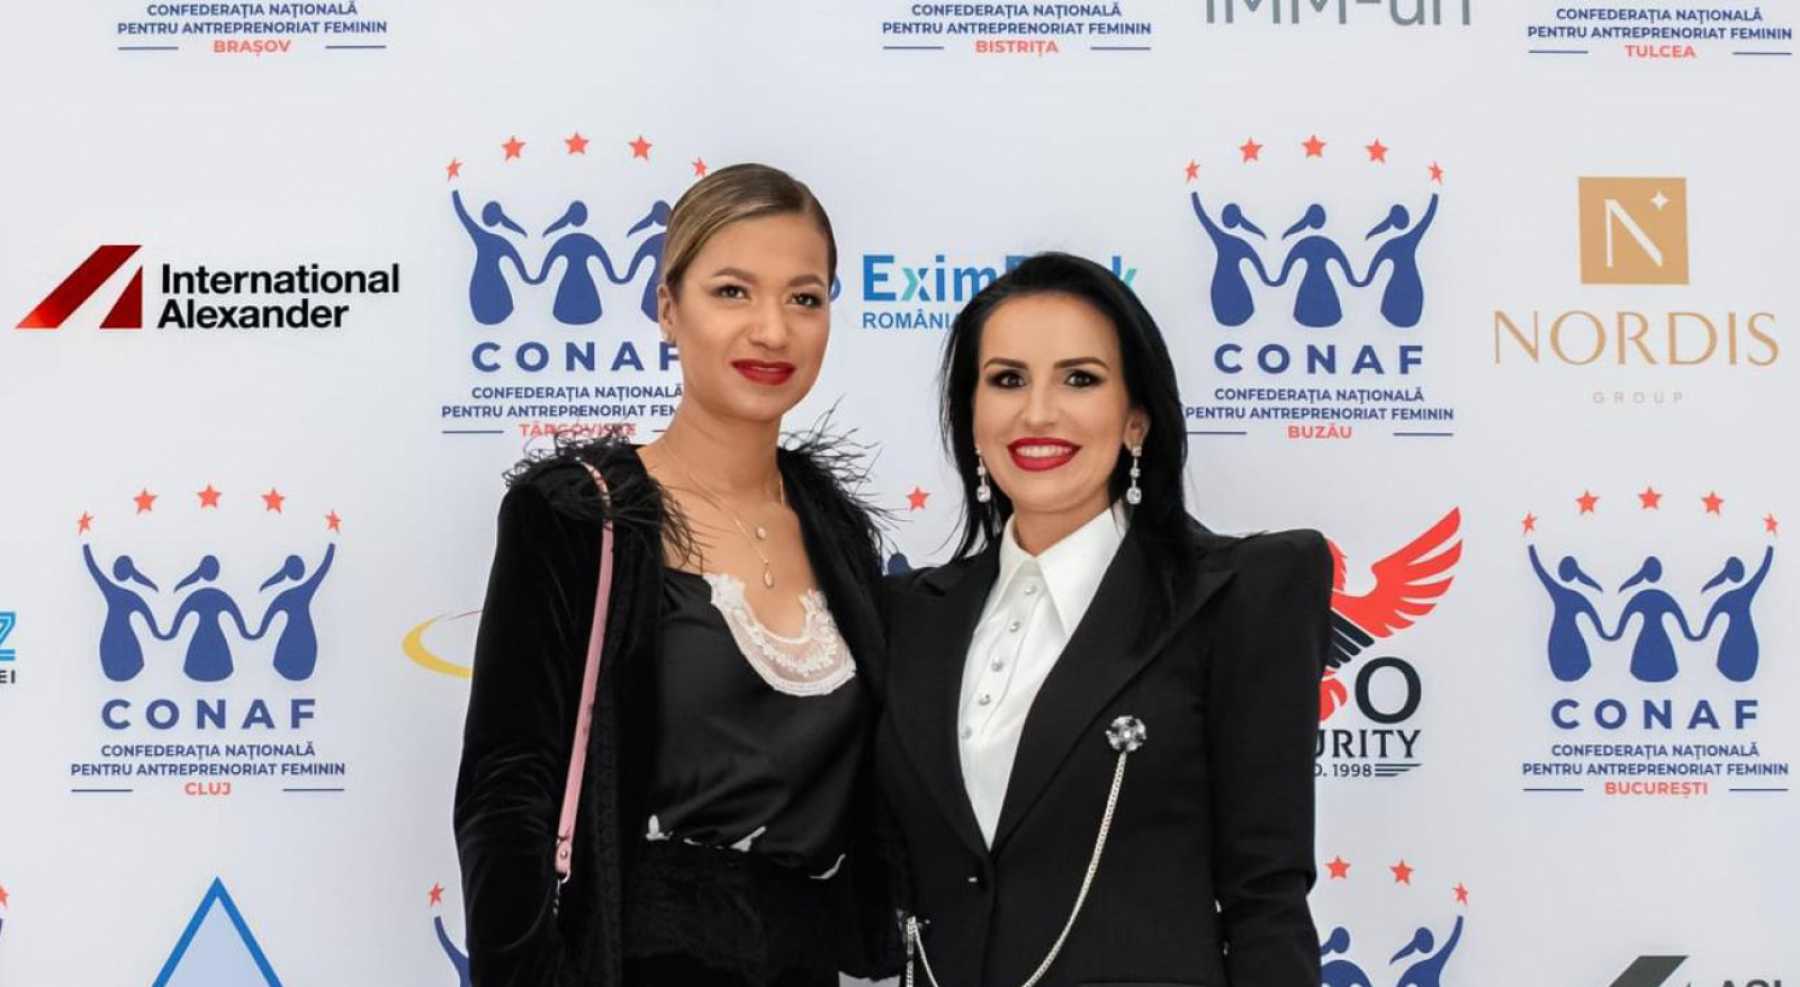 Beatrice Dumitrașcu awarded at Women In Ecomony Gala 2021